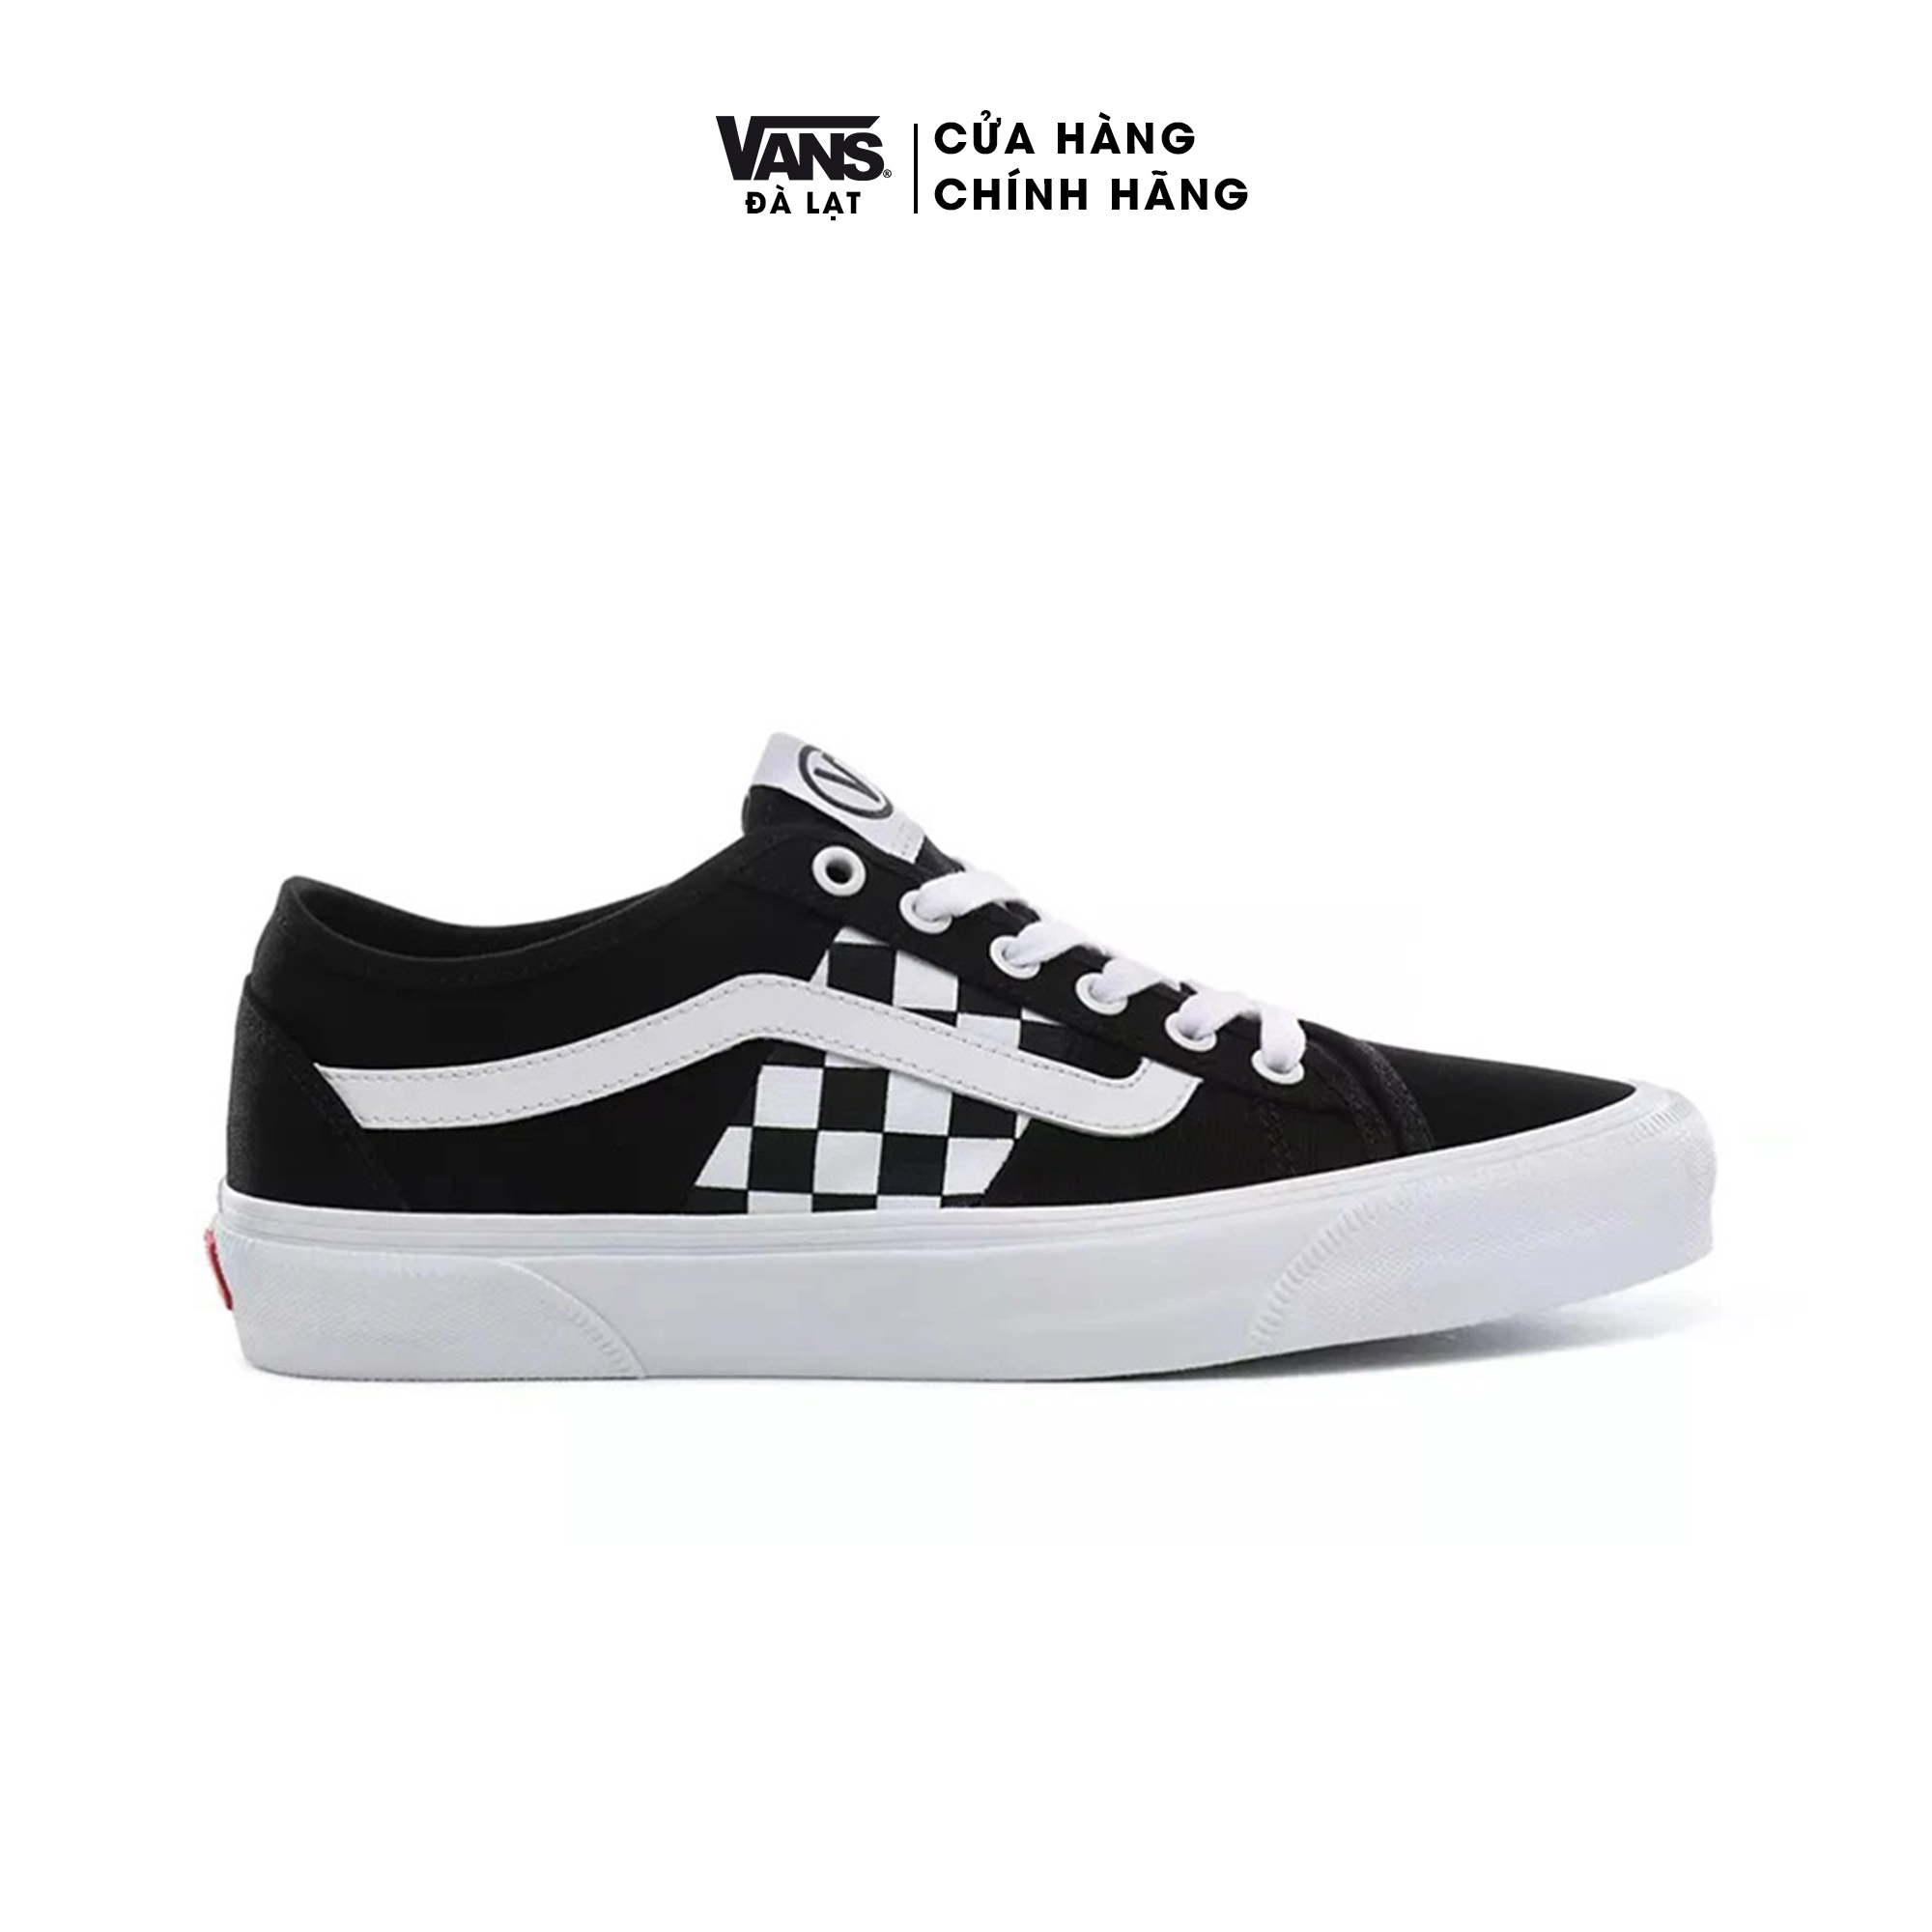 Giày Vans Sneaker Unisex màu đen phối họa tiết Caro - Vans Check Bess NI Shoes - VN0A4BTHT7Z